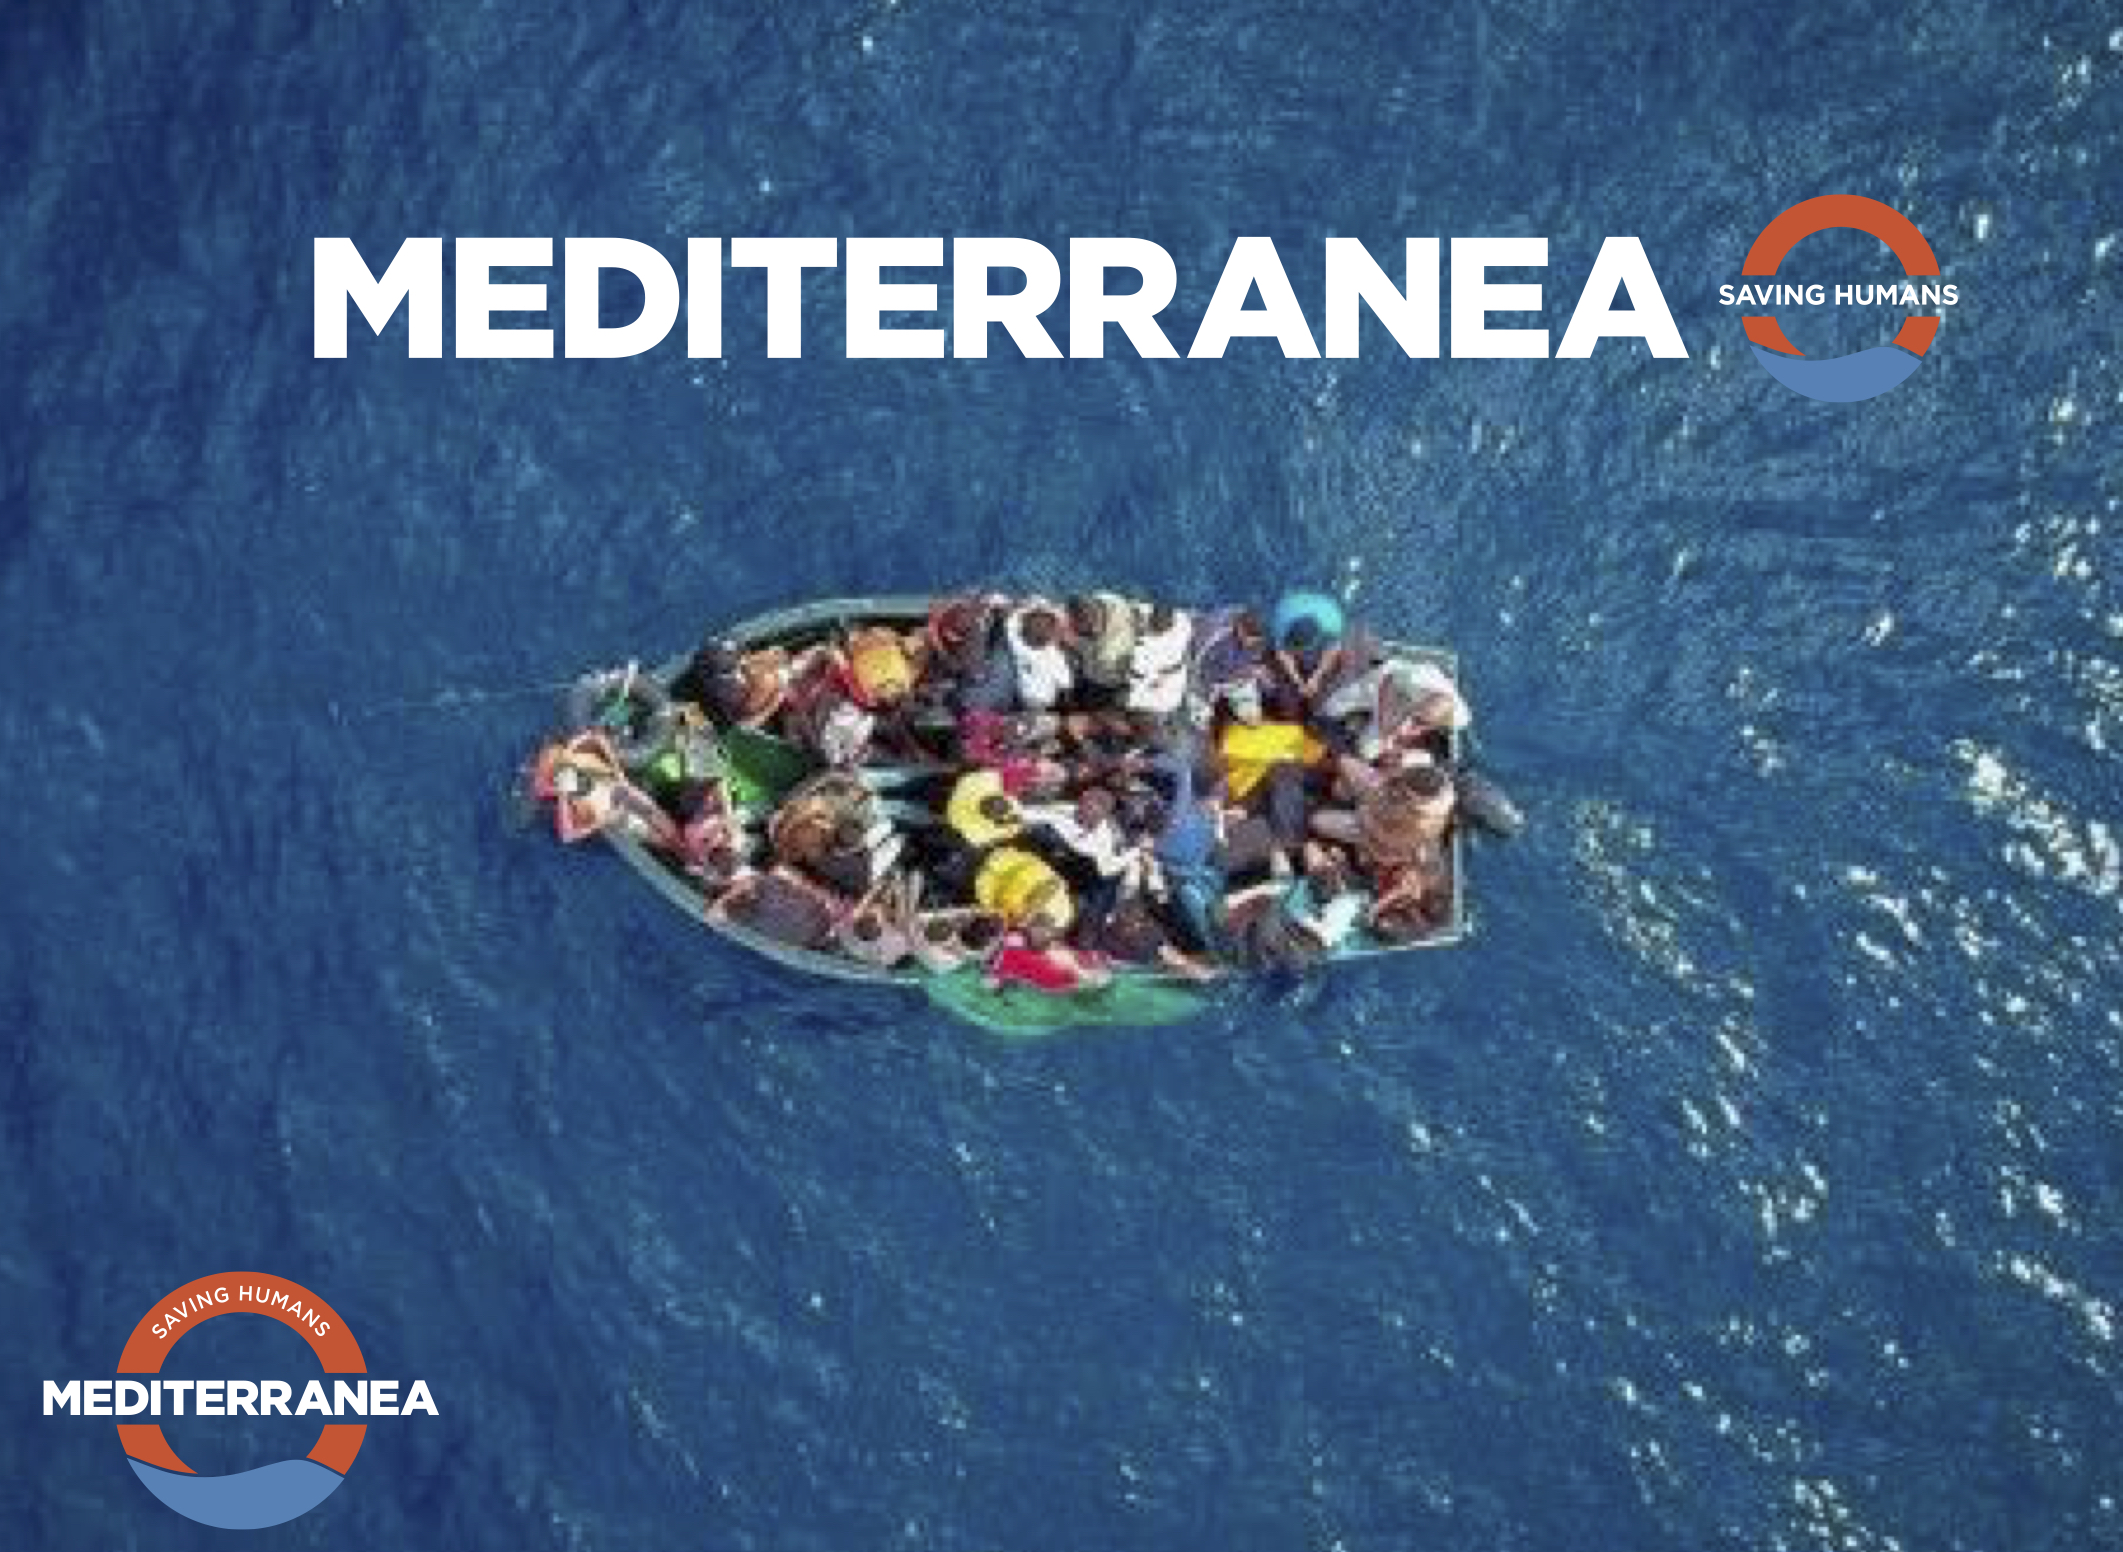 Attivati con Mediterranea: dona, segui, partecipa, diffondi!